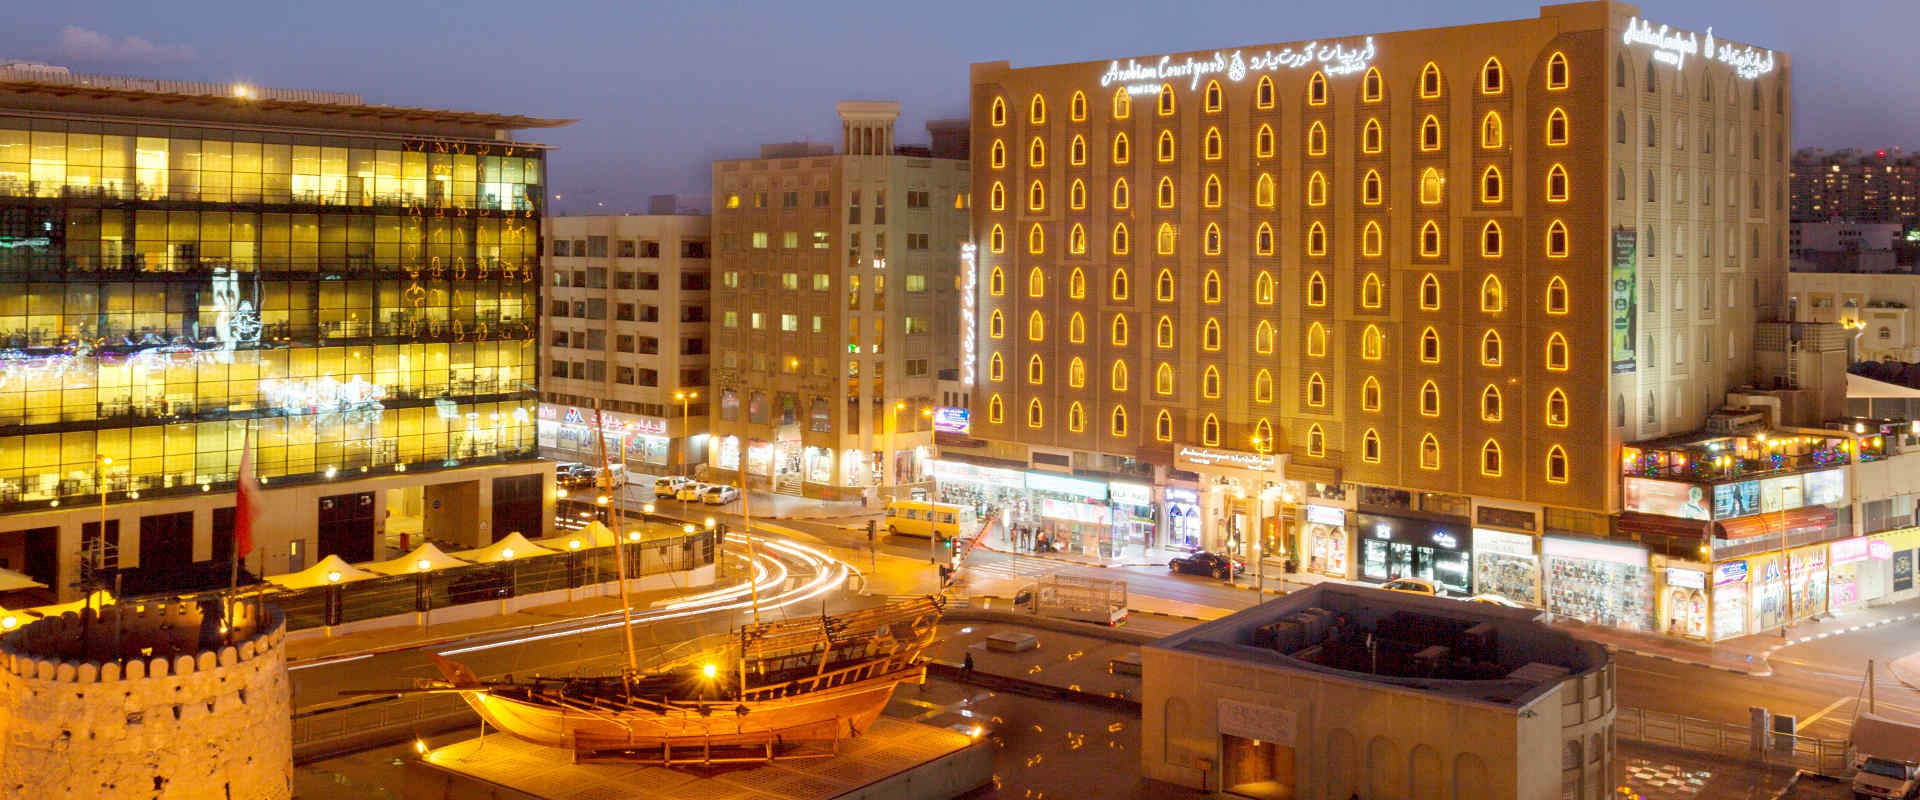 阿拉伯庭院酒店官方网站 阿拉伯庭院水疗酒店 酒店和水療中心 迪拜酋长国